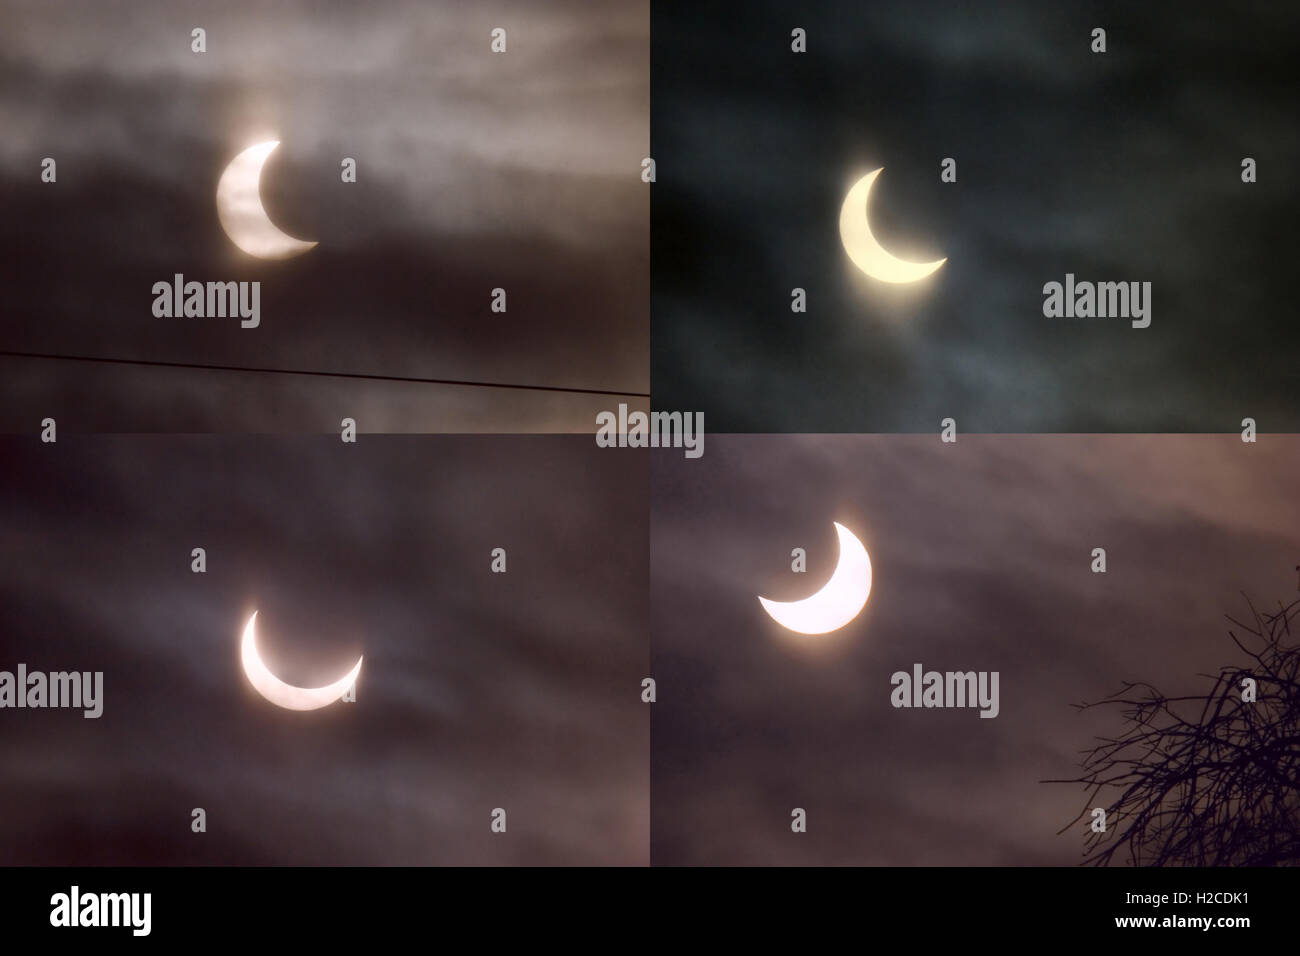 Les différentes phases de l'éclipse solaire partielle Januart 4th, 2011 à Moscou (Russie) illustré par quatre panneaux. Banque D'Images